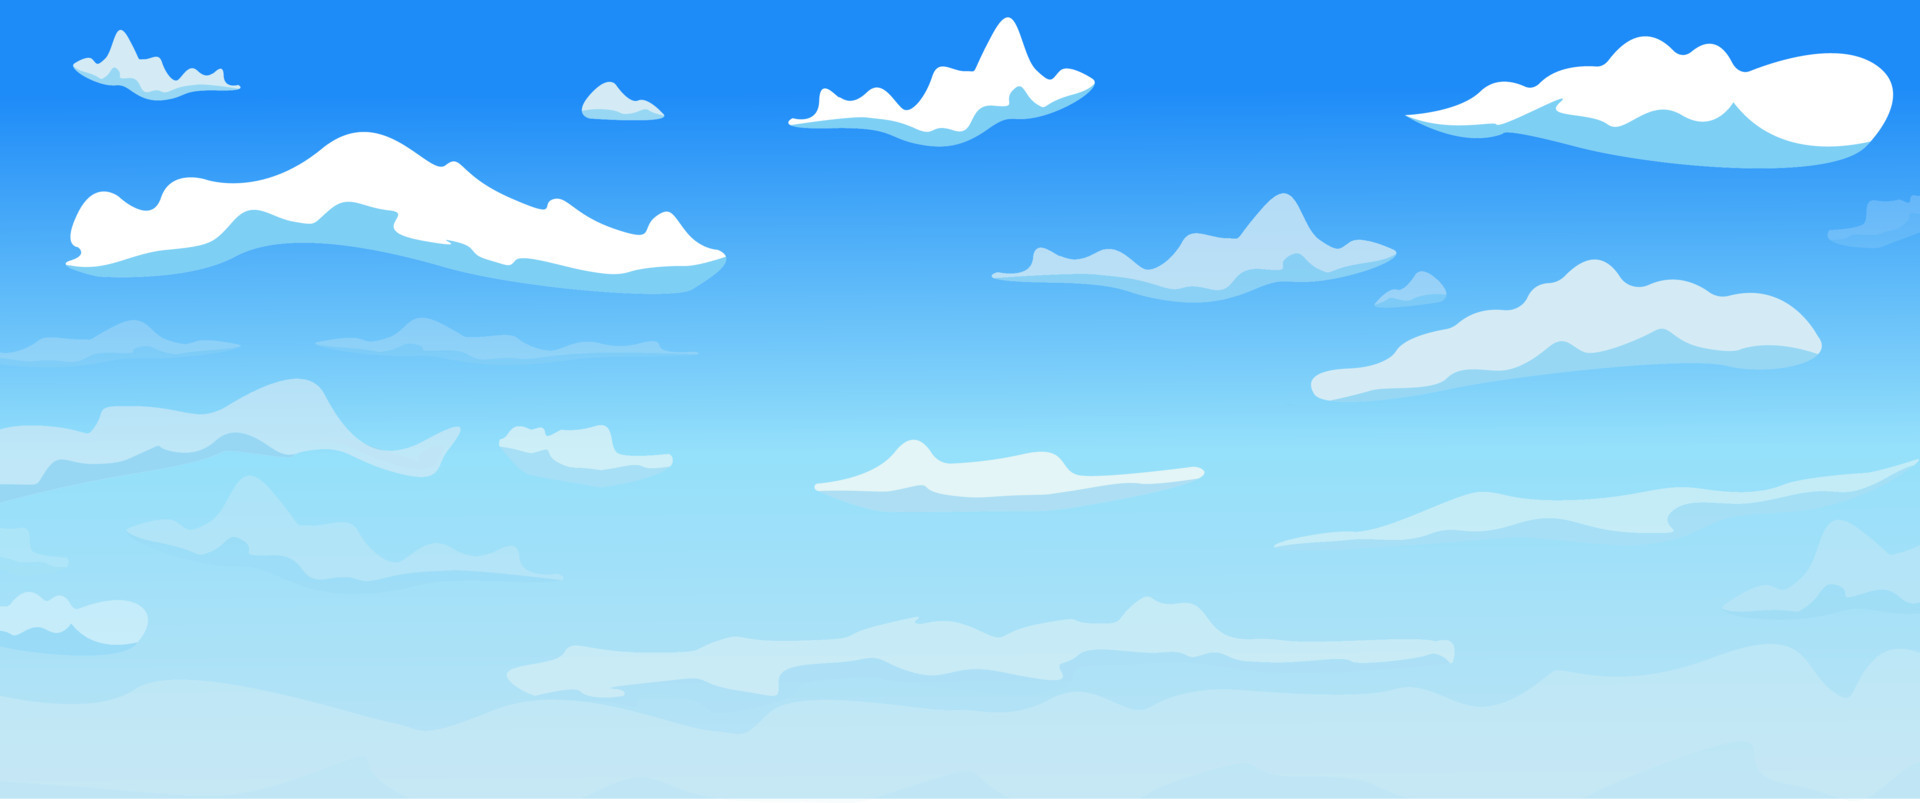 Nếu bạn yêu thích nghệ thuật vector, hãy xem bức tranh về mây tuyệt đẹp này. Được tạo ra và hoàn thiện với sự tinh tế cao của một người nghệ sĩ, chúng tôi cam đoan rằng bạn sẽ không phí thời gian để ngắm nhìn những đám mây đầy màu sắc này.